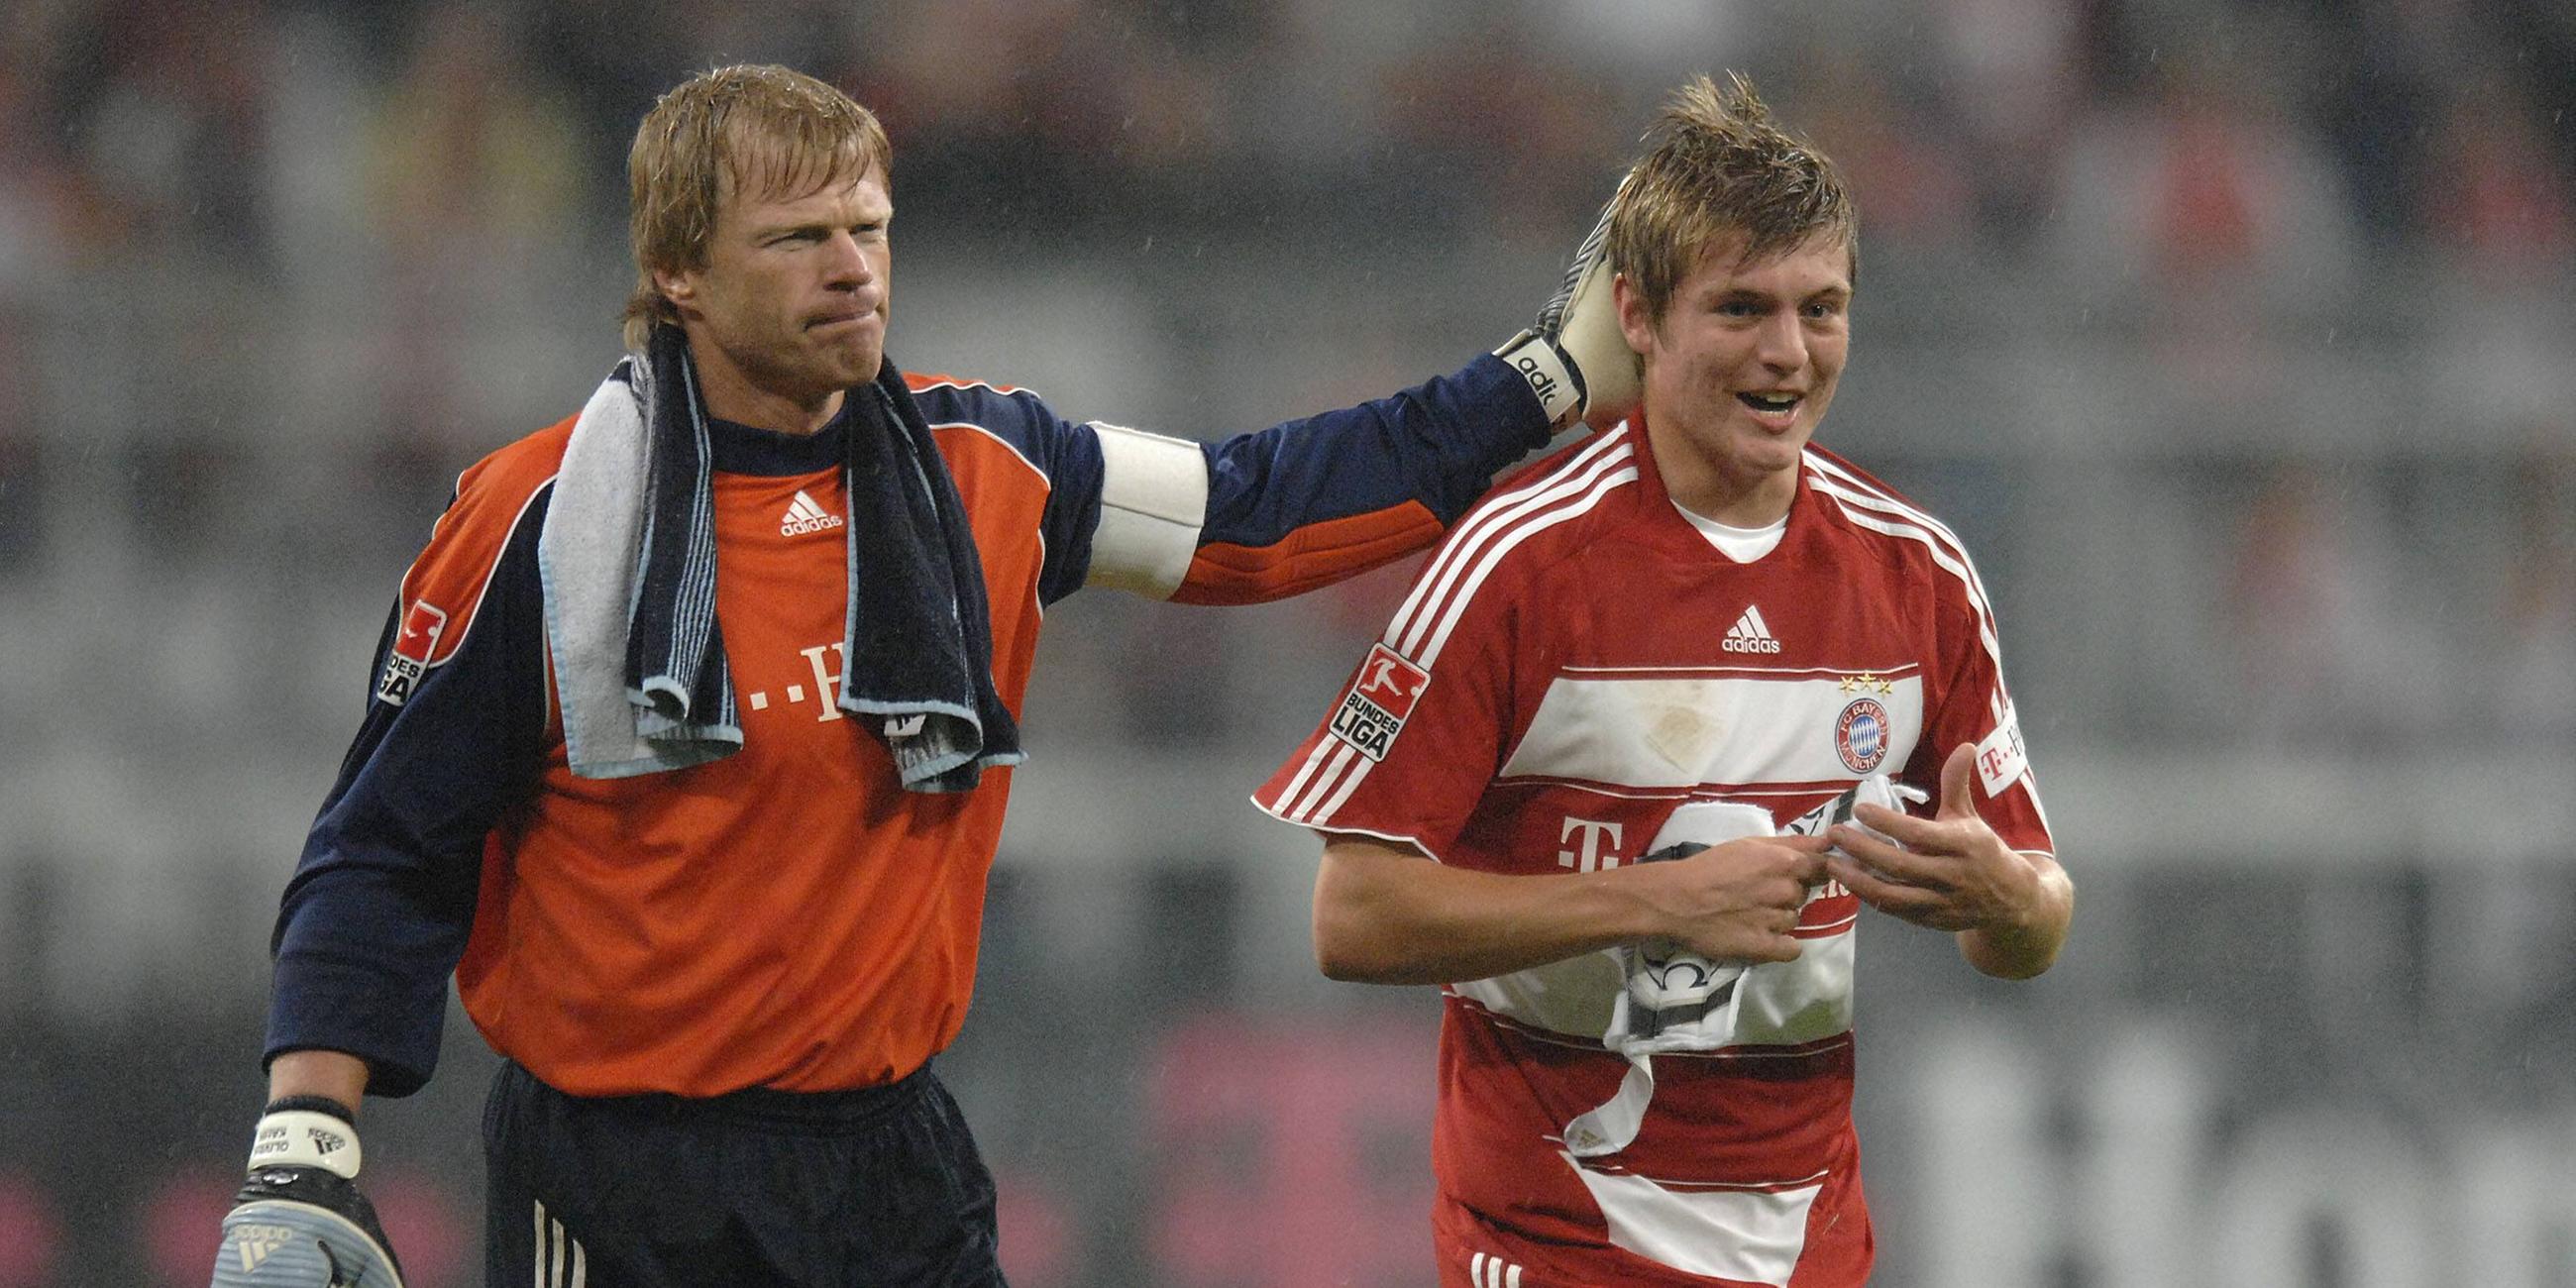 mit Oliver Kahn nach seinem ersten Bundesligaspiel 2007 gegen Cottbus – direkt zwei Vorlagen gegeben, damals jüngster Spieler, der für Bayern Bundesliga gespielt hat (17 Jahre, 265 Tage)